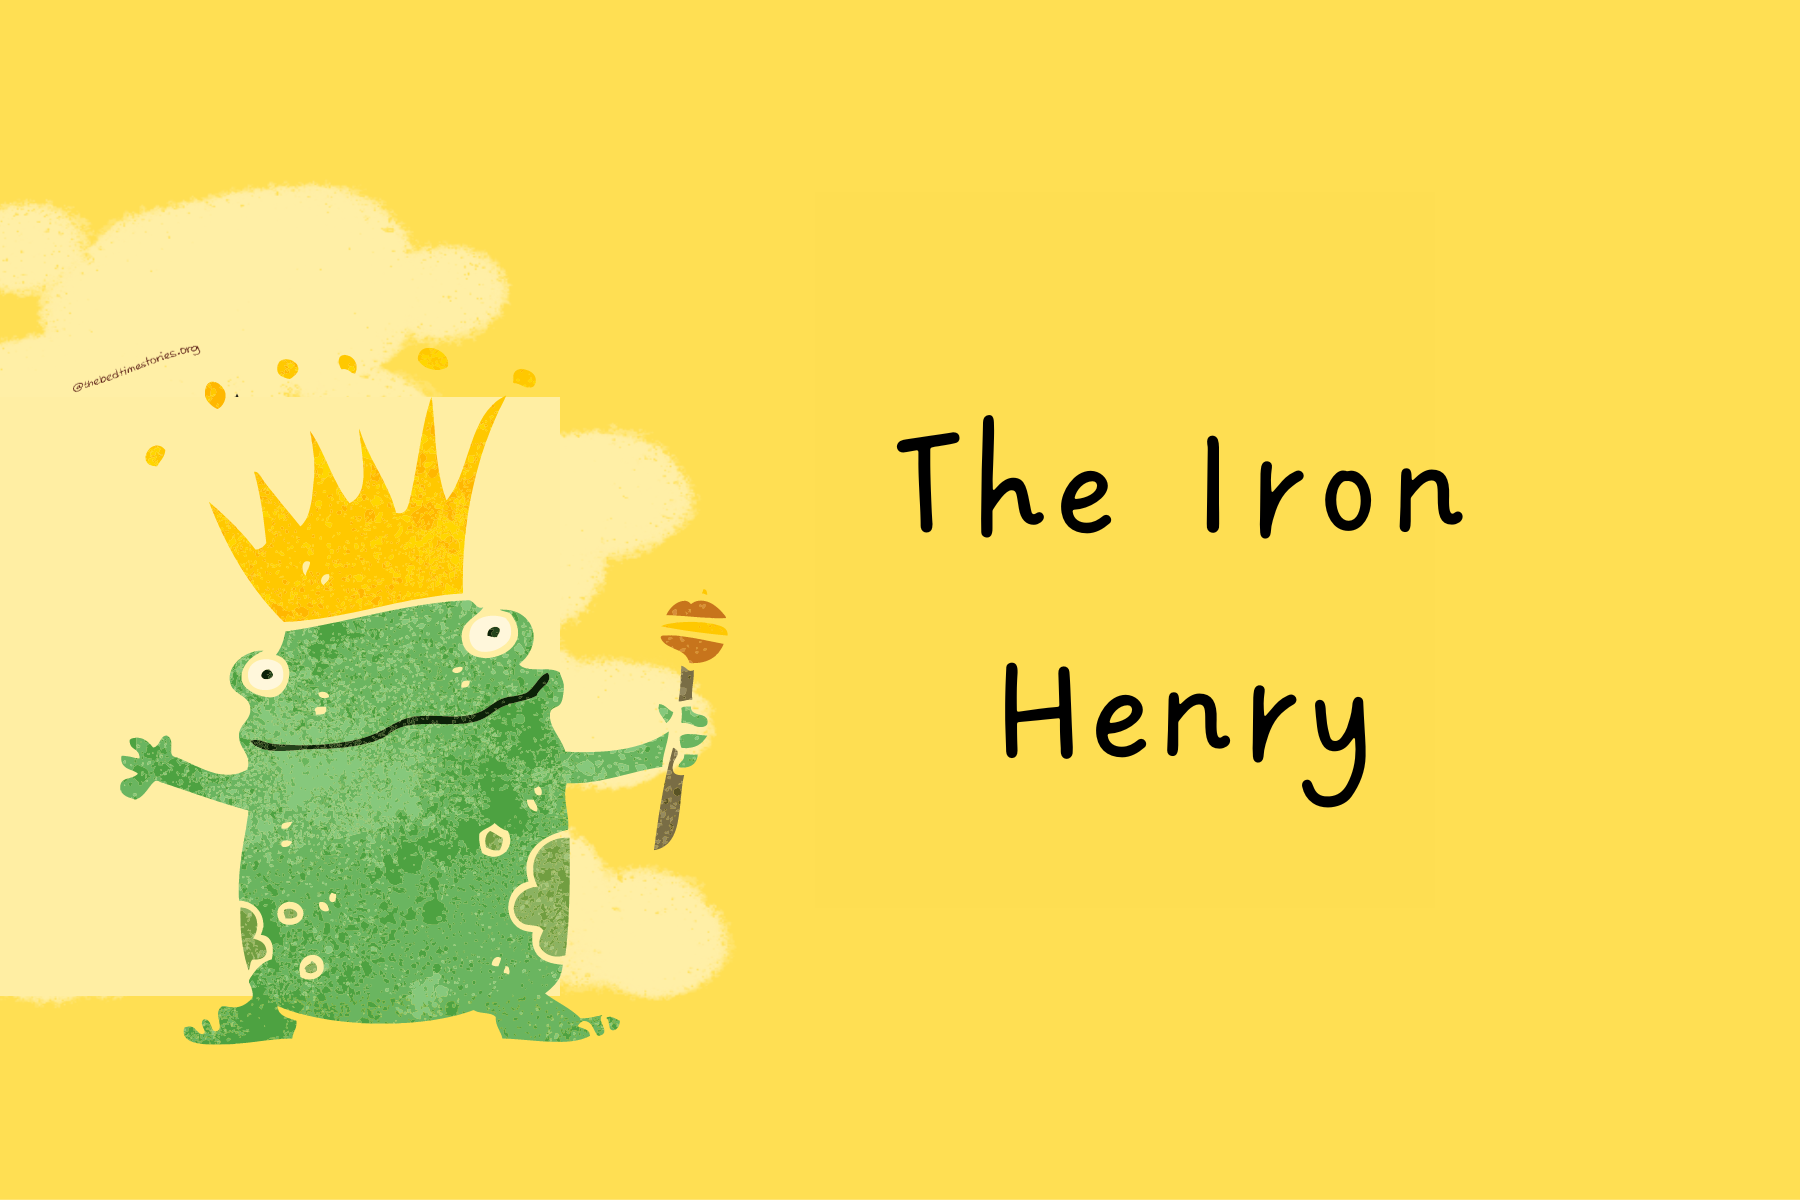 The irony henry